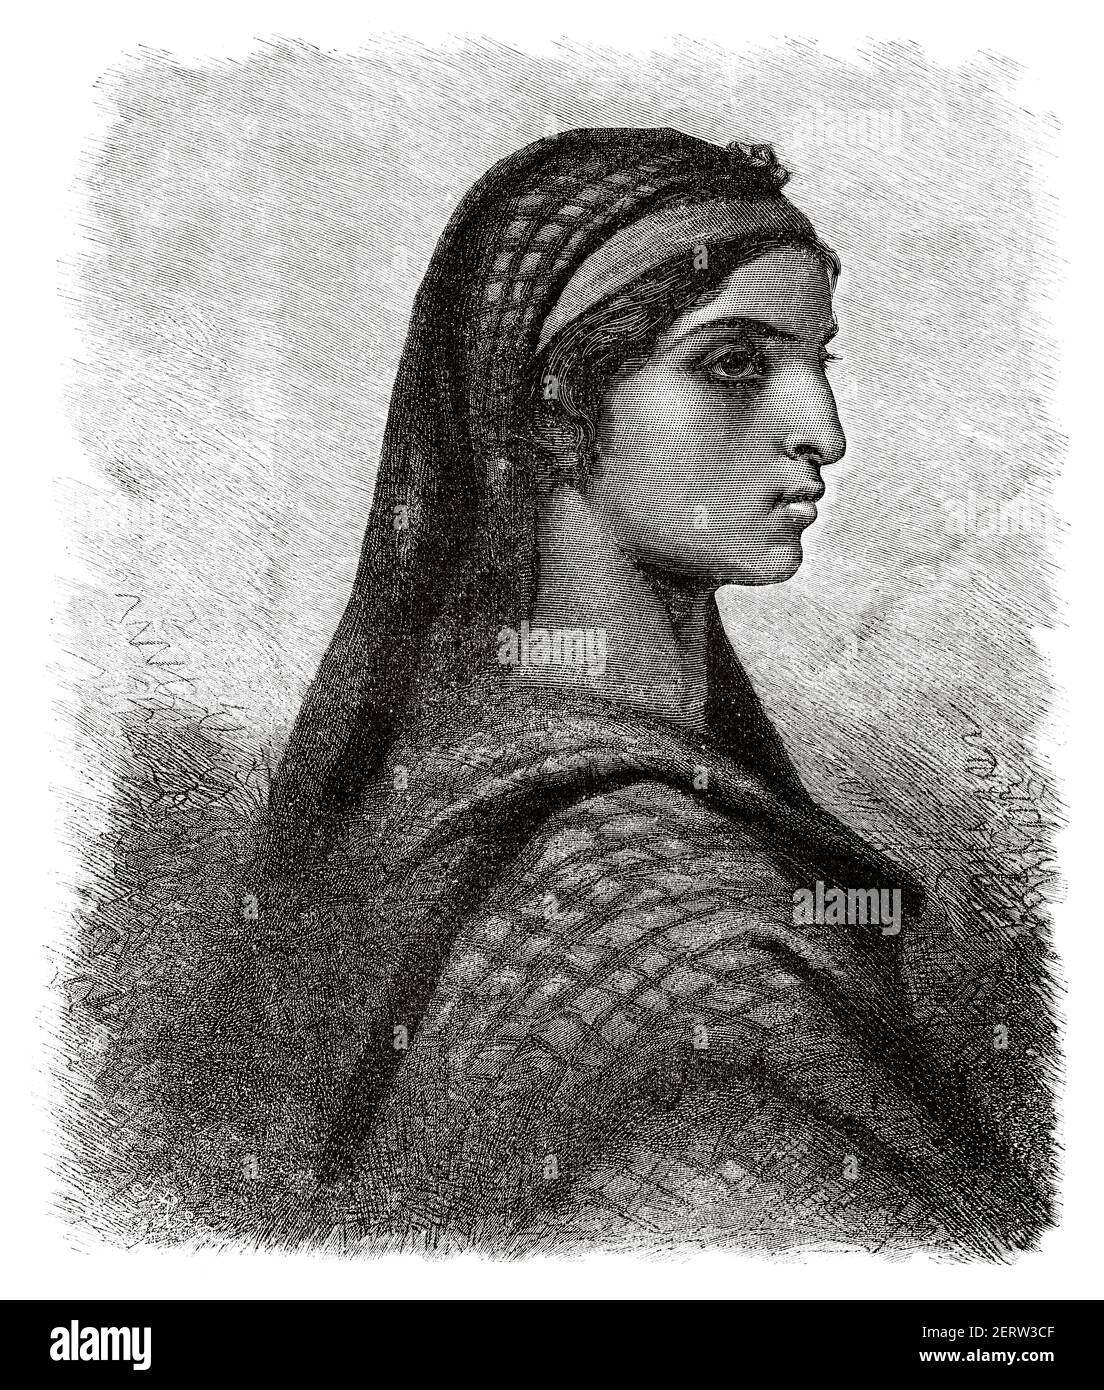 Portrait d'une égyptienne de religion copte, Égypte XIXe siècle. Illustration gravée du XIXe siècle, El Mundo Ilustrado 1880 Banque D'Images